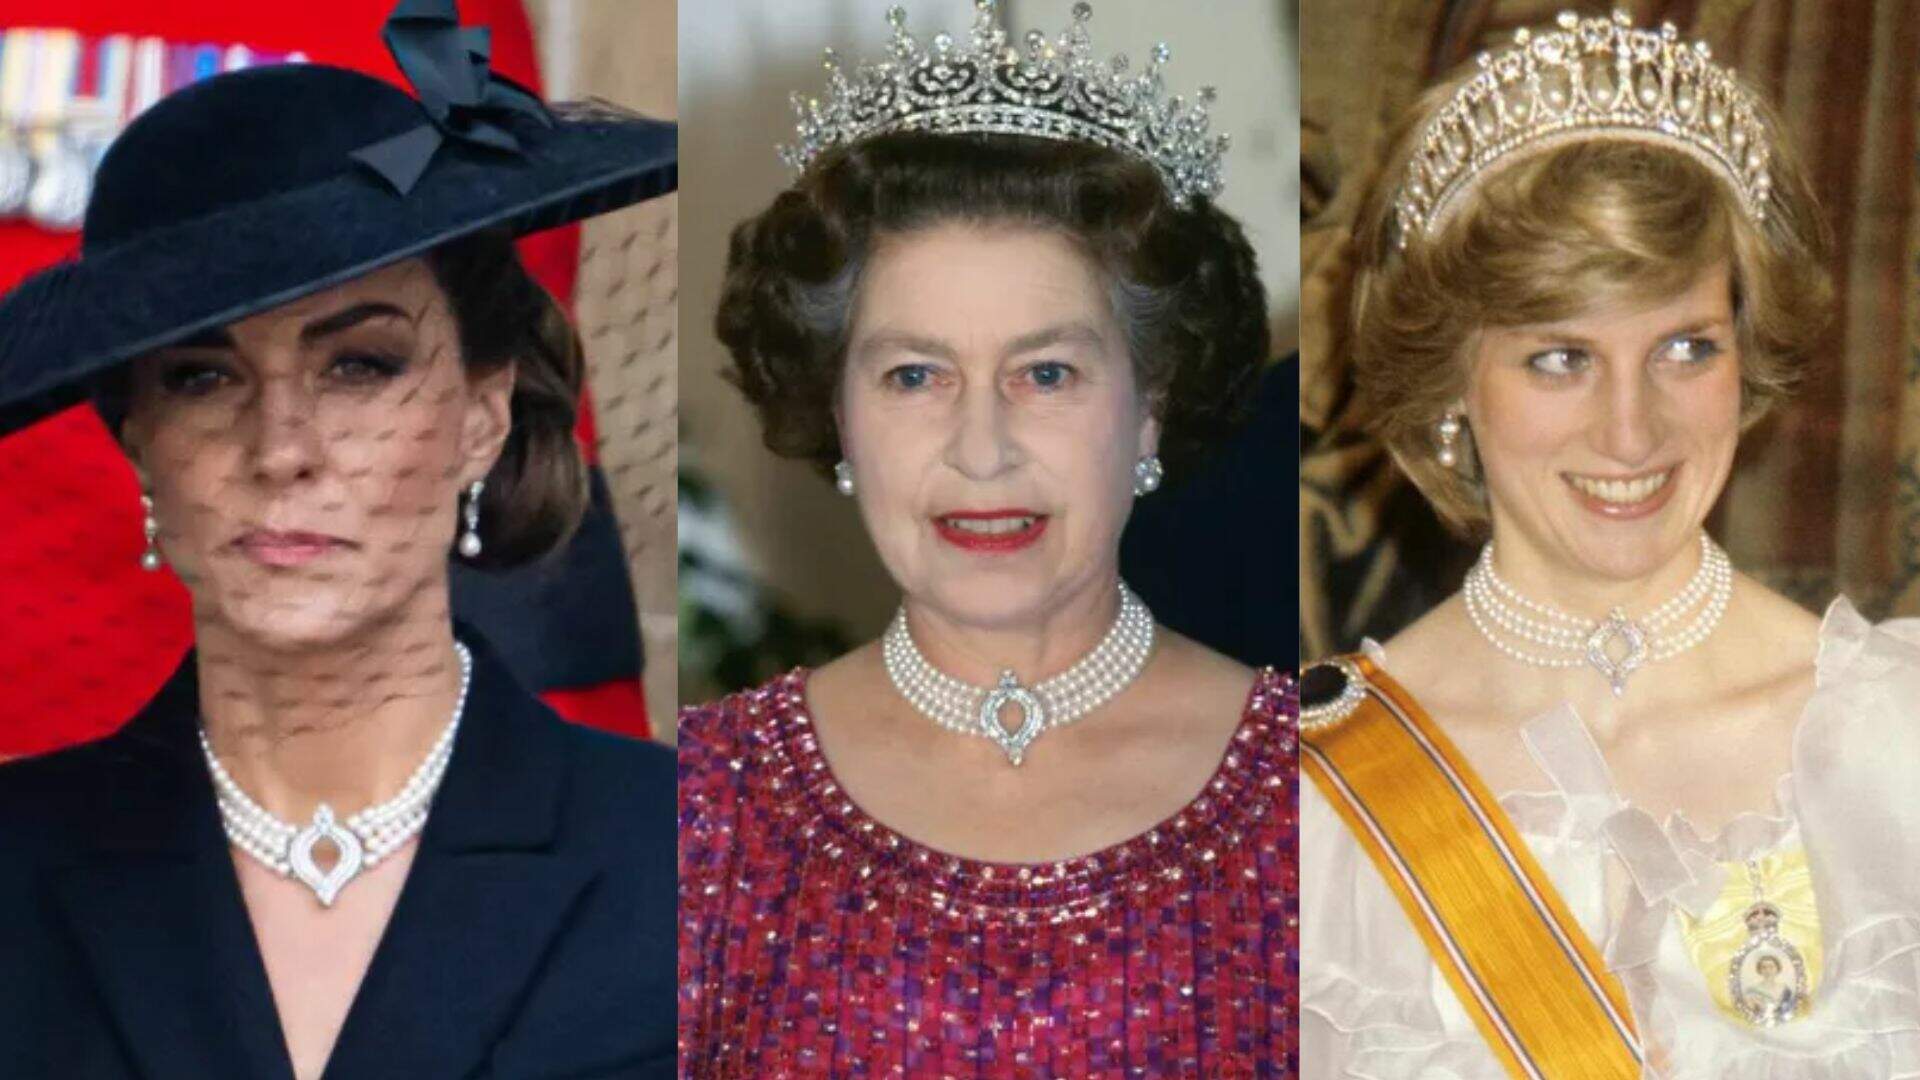 Durante o funeral, Kate Middleton usa o colar da rainha Elizabeth II